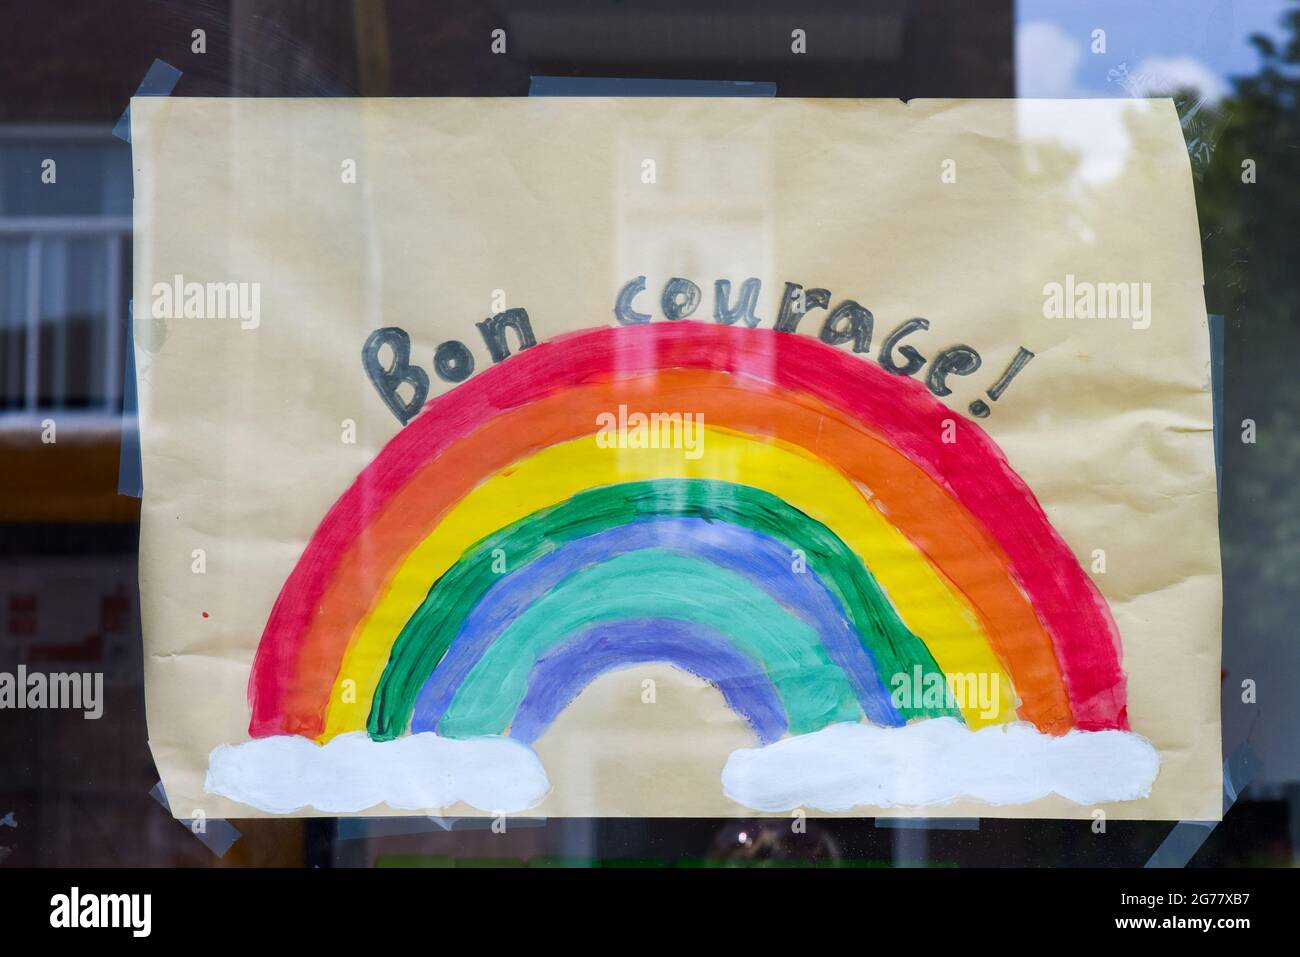 Viel Glück sagt dieser Covid-19 Rainbow of Hope auf einem Schaufenster in Montreal, kanada Stockfoto